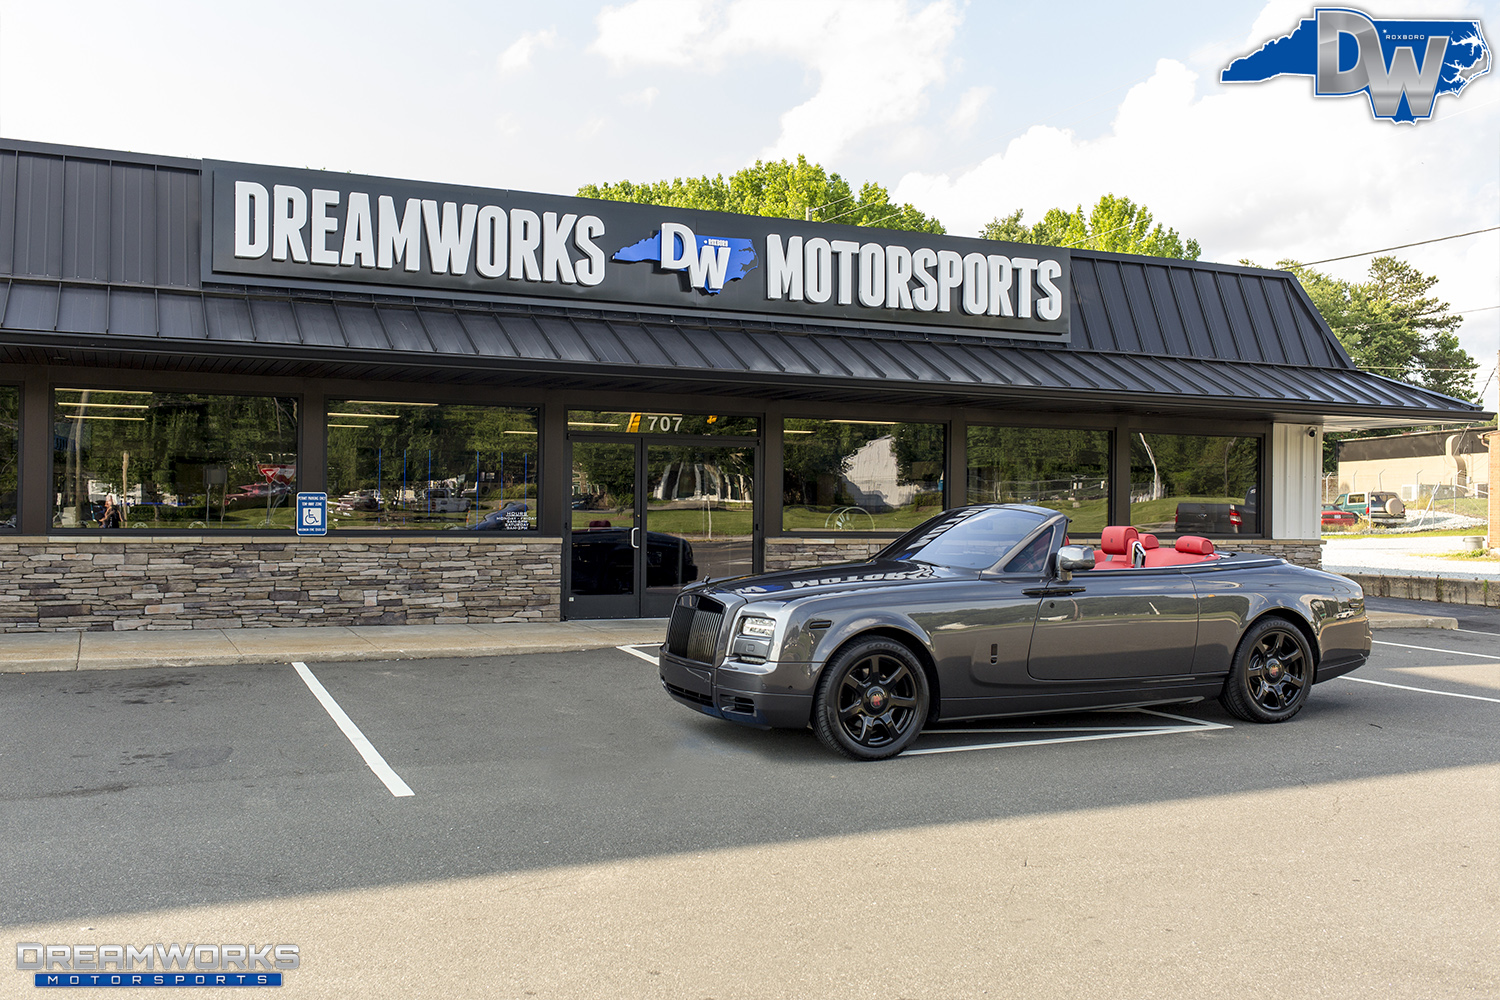 Rolls-Royce-Drophead-John-Wall-Dreamowrks-Motorsports-15.jpg